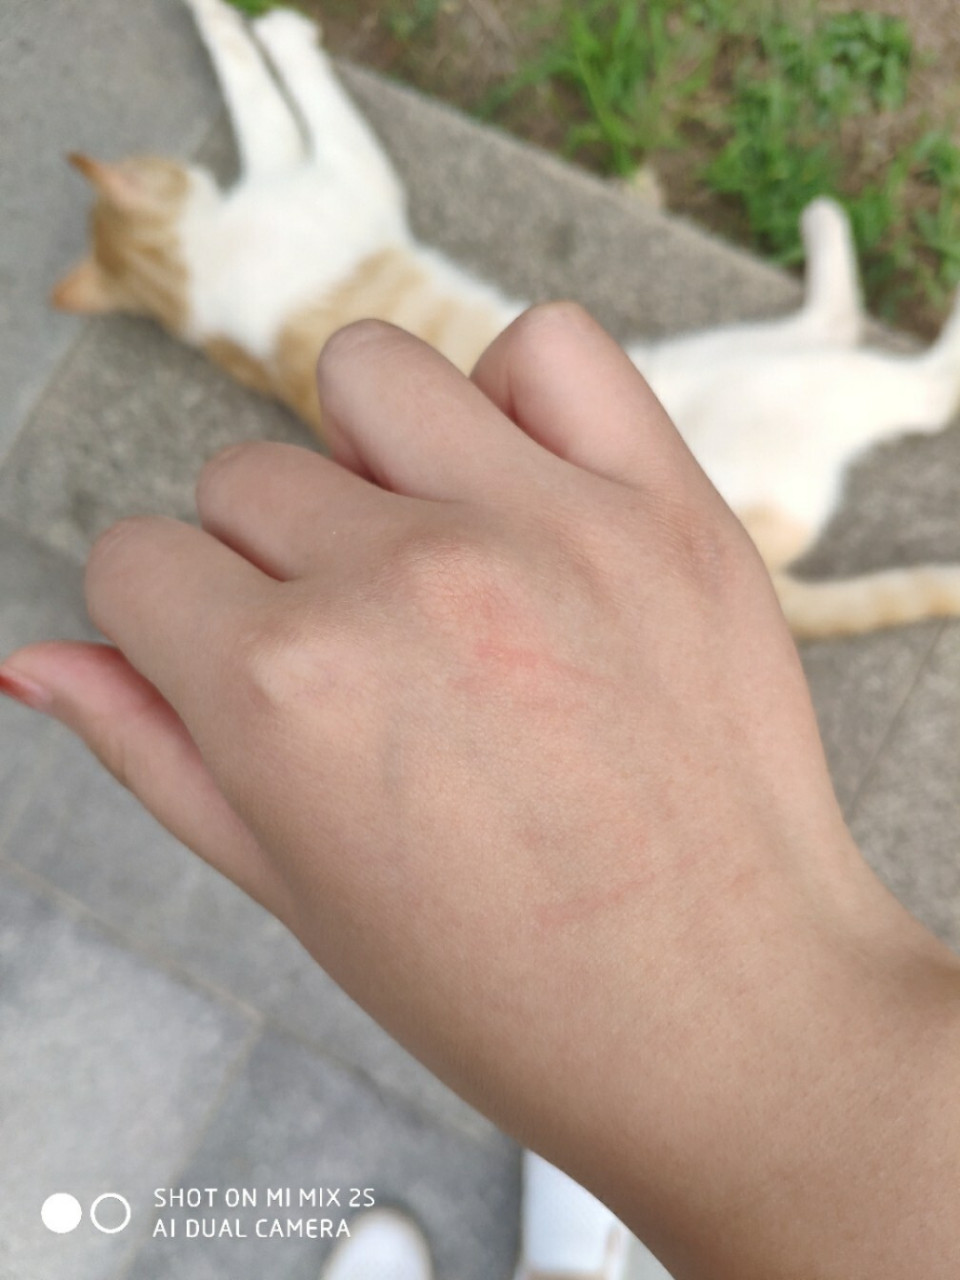 求助,被猫猫稍微爪破了皮 这种情况需要打针吗?